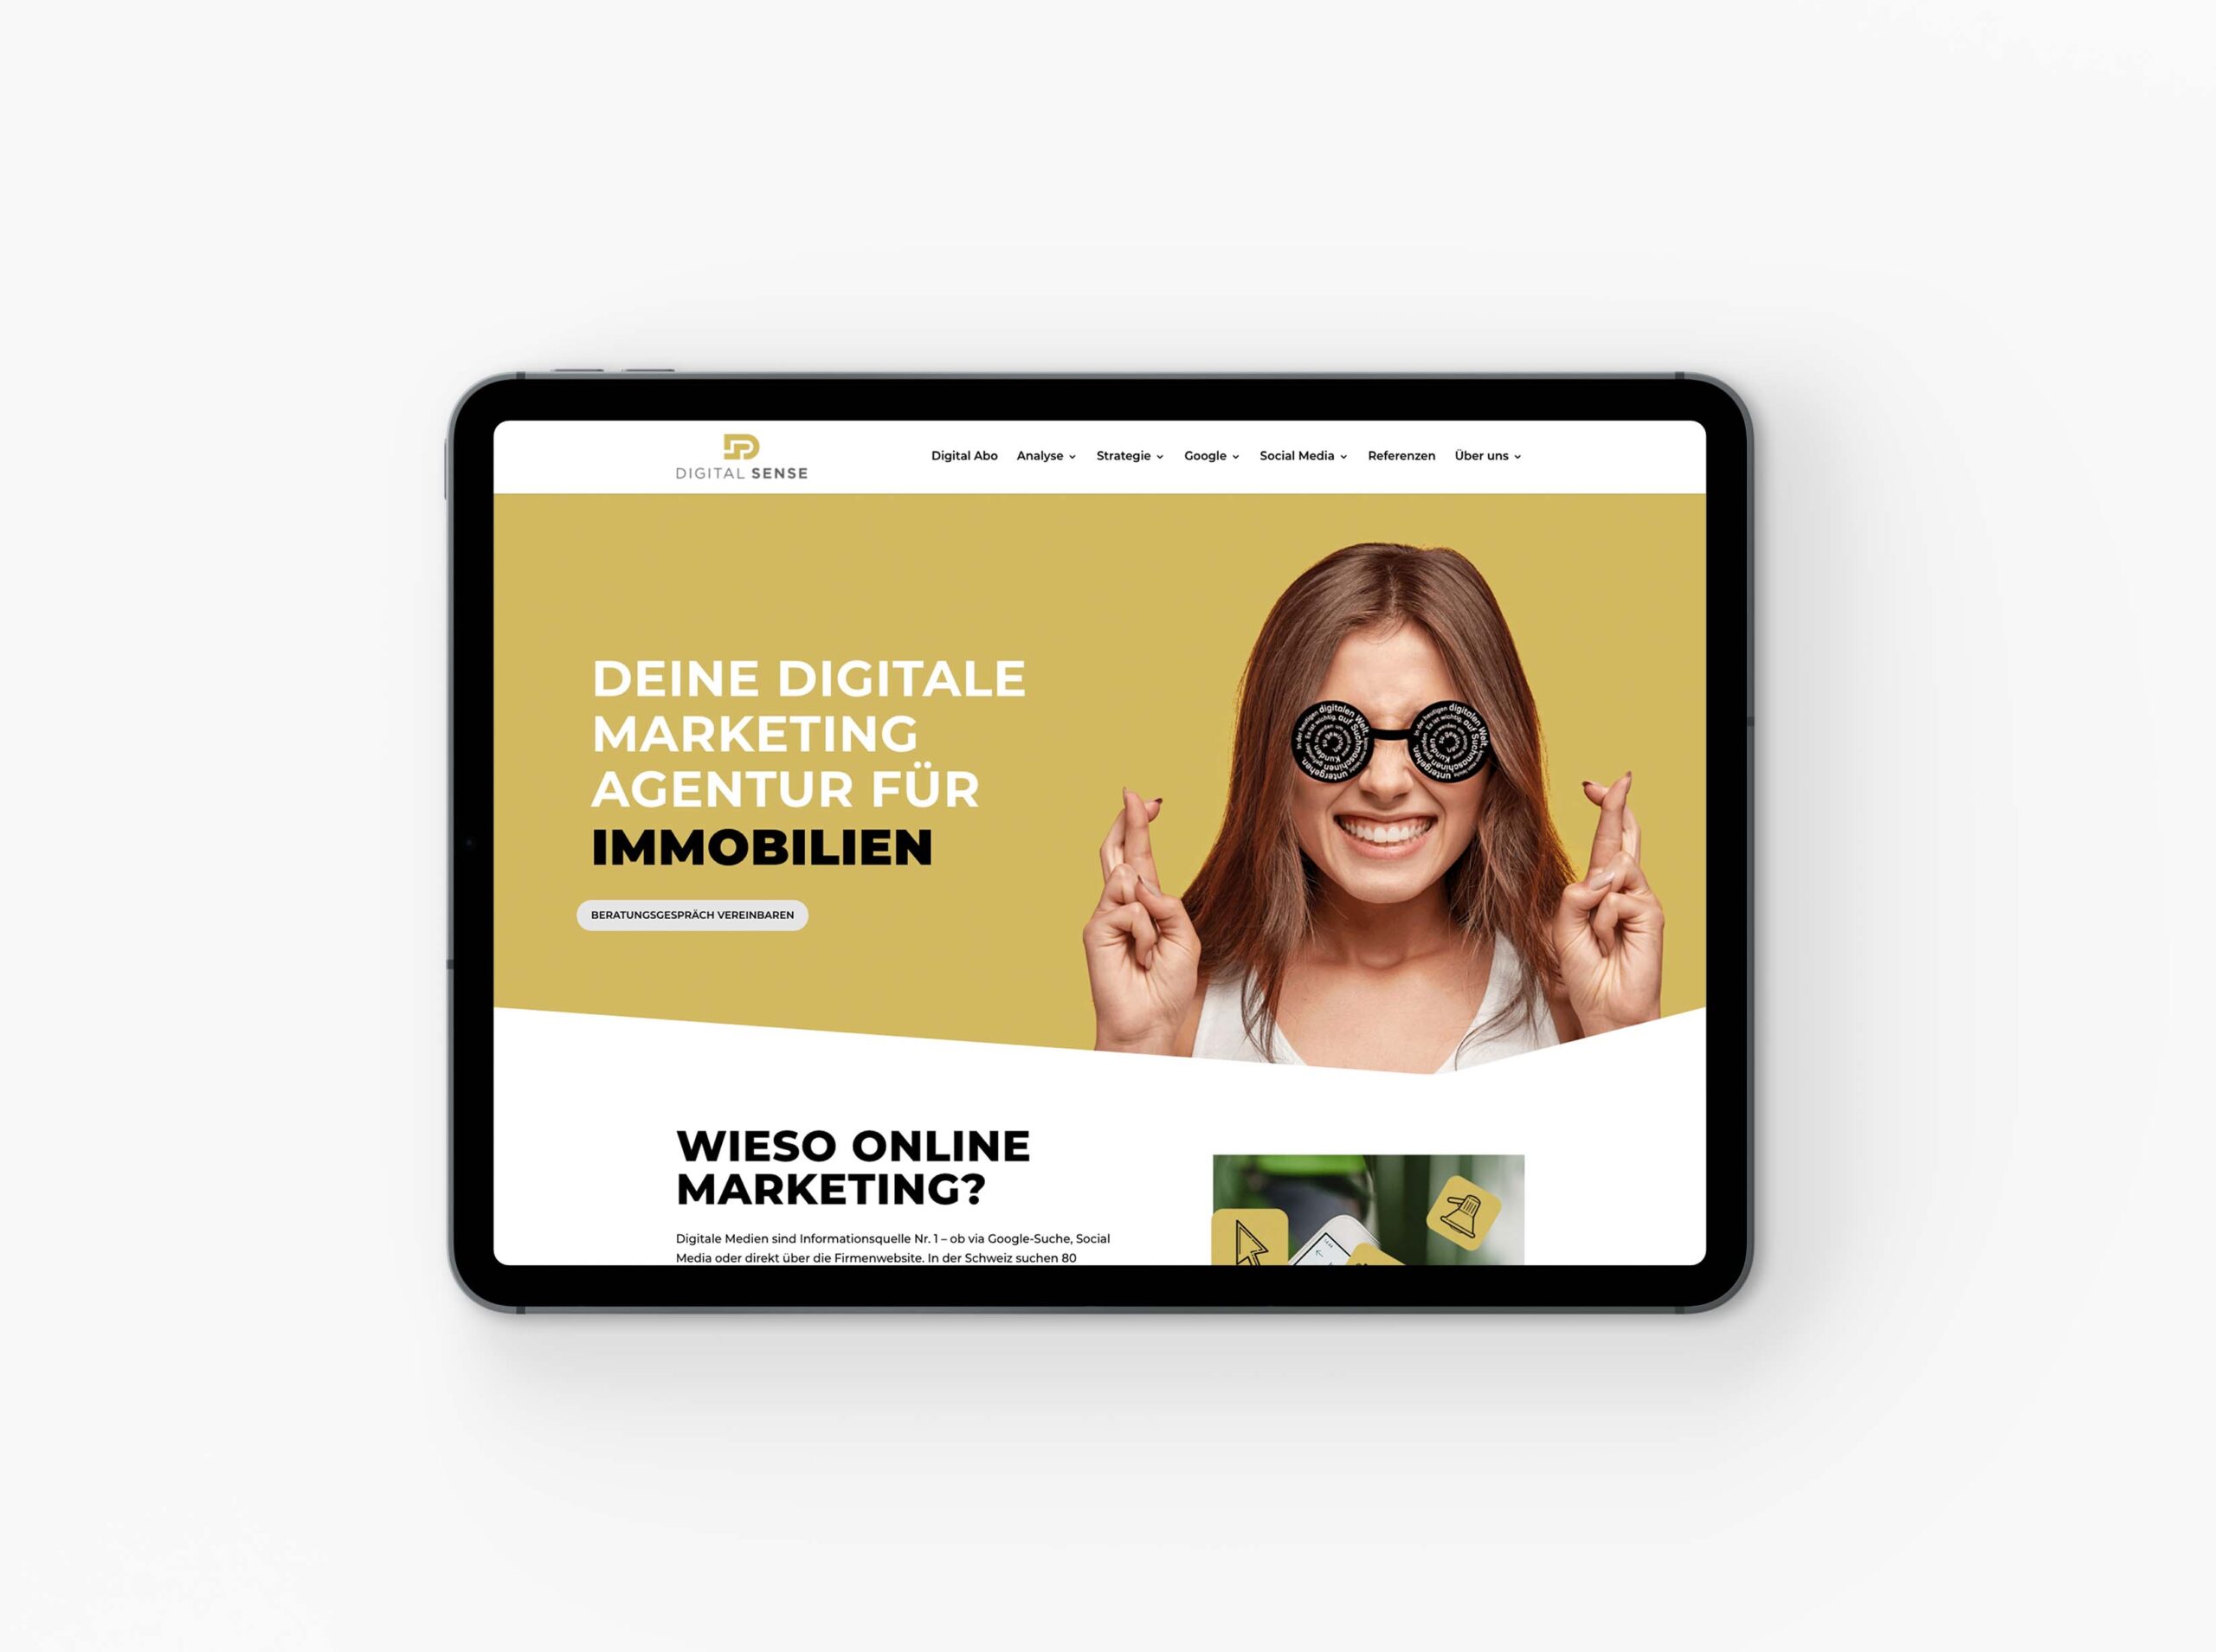 digitalsense-neue-website-digitalagentur-gasser-miesch